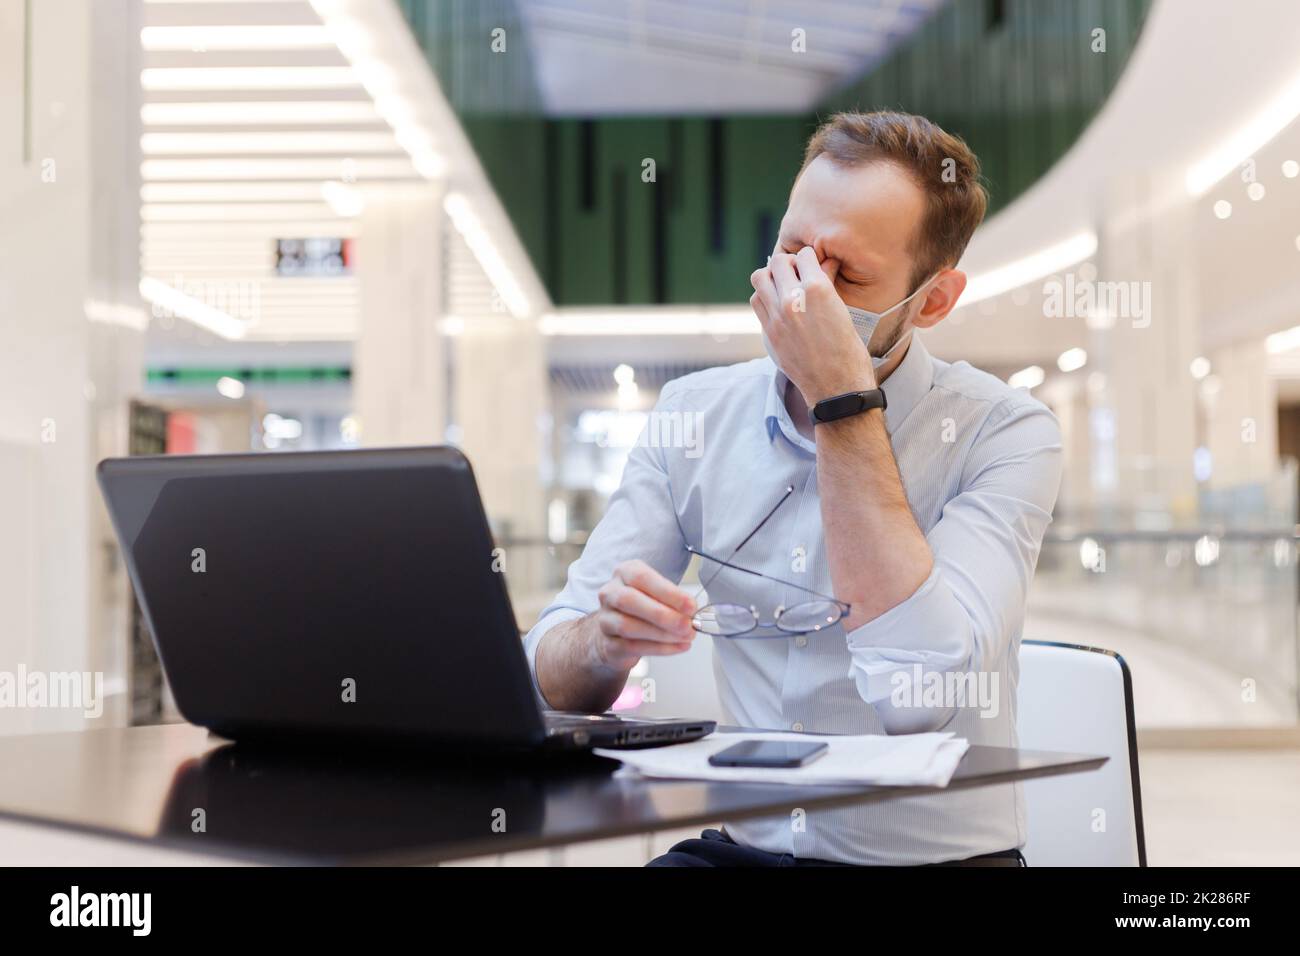 Un gars fatigué portant un masque se sent épuisé et ressent de la fatigue oculaire, touchant les yeux fermés travaillant sur un ordinateur portable Banque D'Images